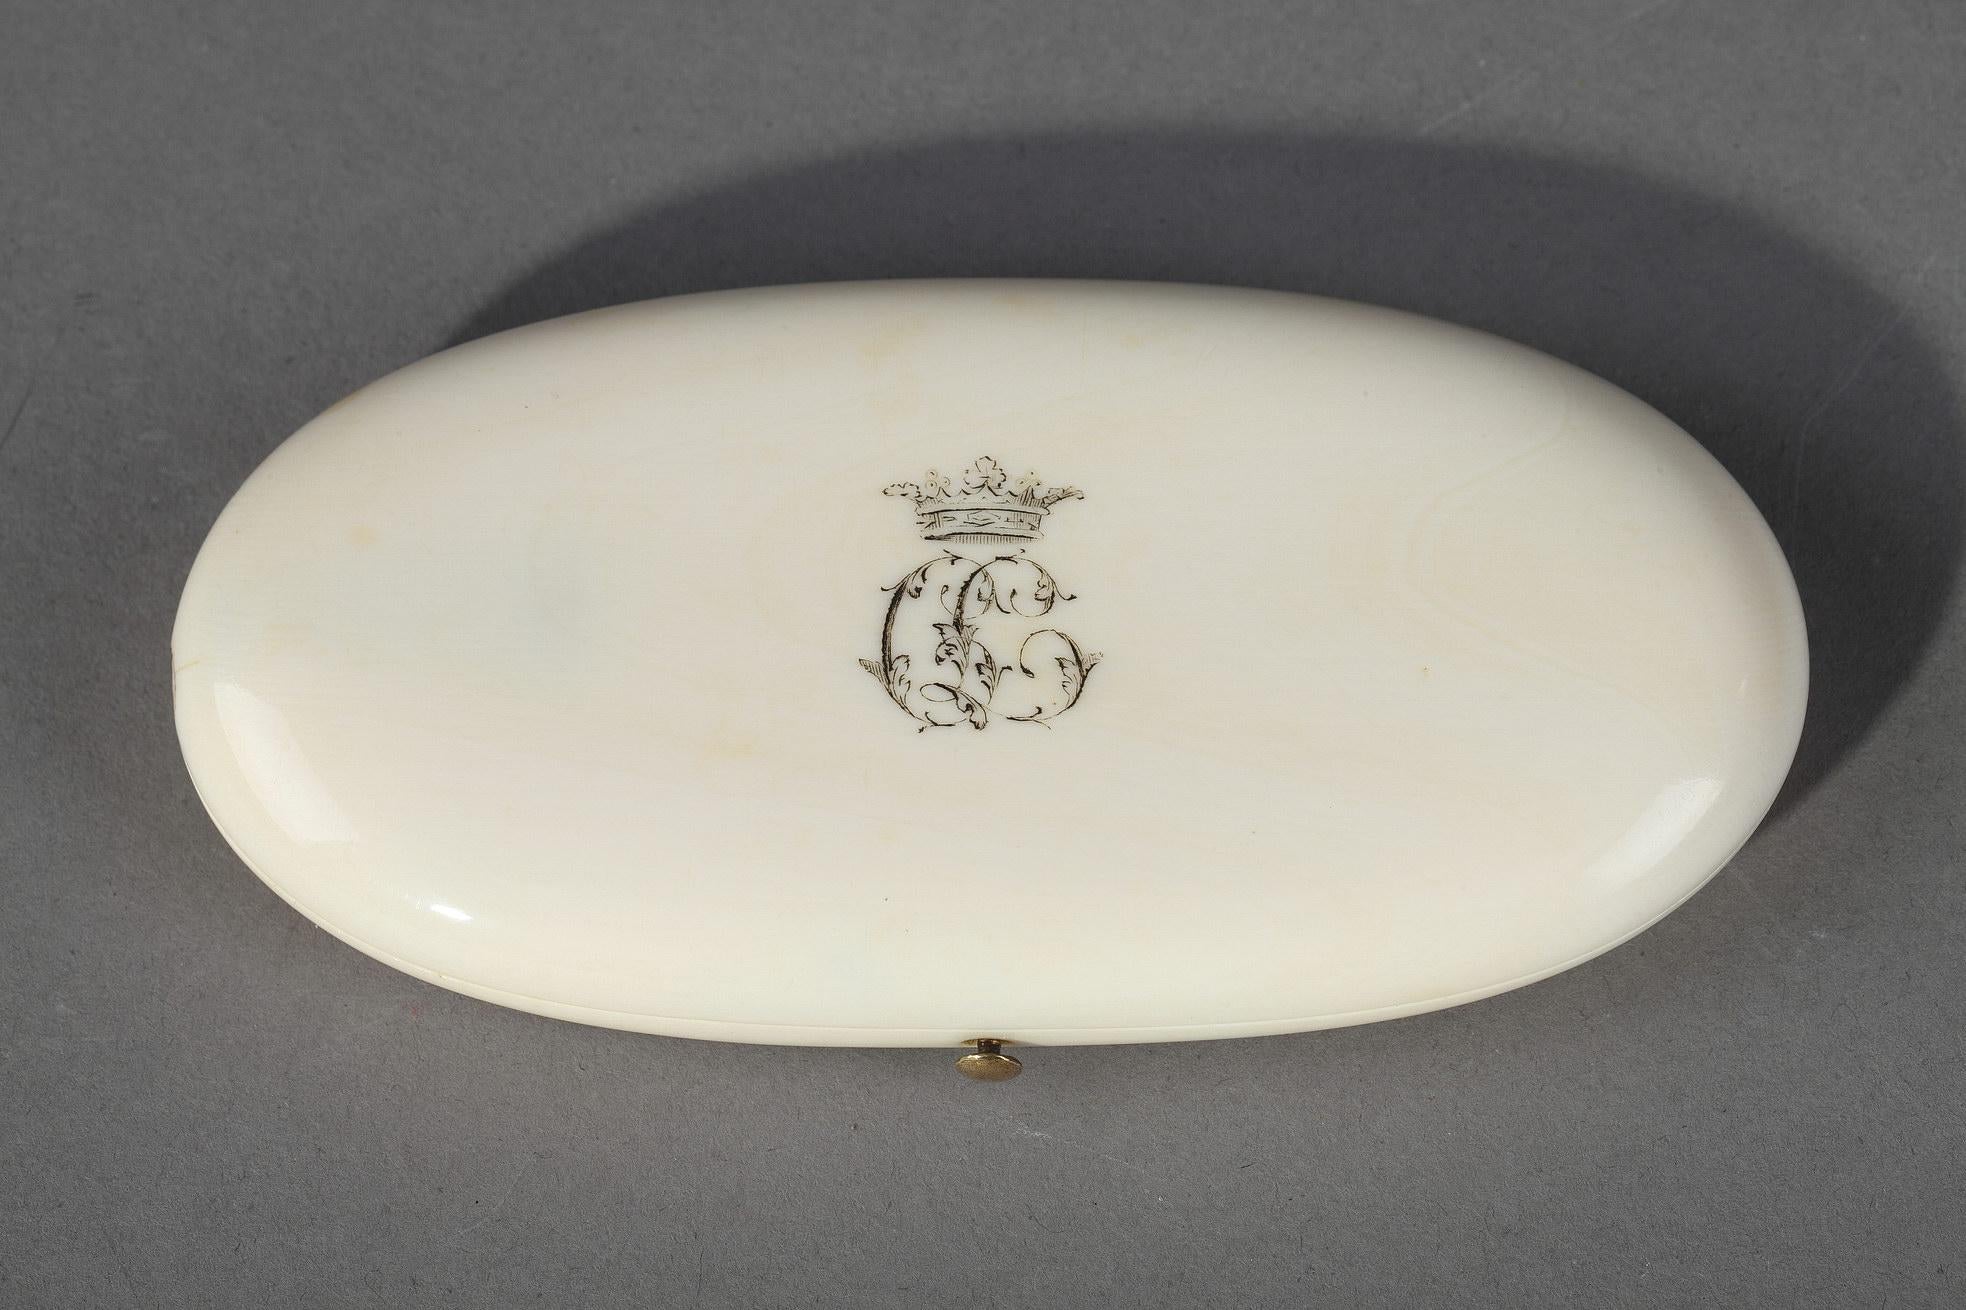 Ovales Nähkästchen aus dem späten 19. Jahrhundert, verziert mit gekröntem Monogramm. Das Etui enthält fünf Nähutensilien aus Gold und Stahl, die mit kleinen Blumen verziert sind. Auf der Innenseite beschriftet: AUCOC A PARIS. Gewicht: 27,6 g,

um